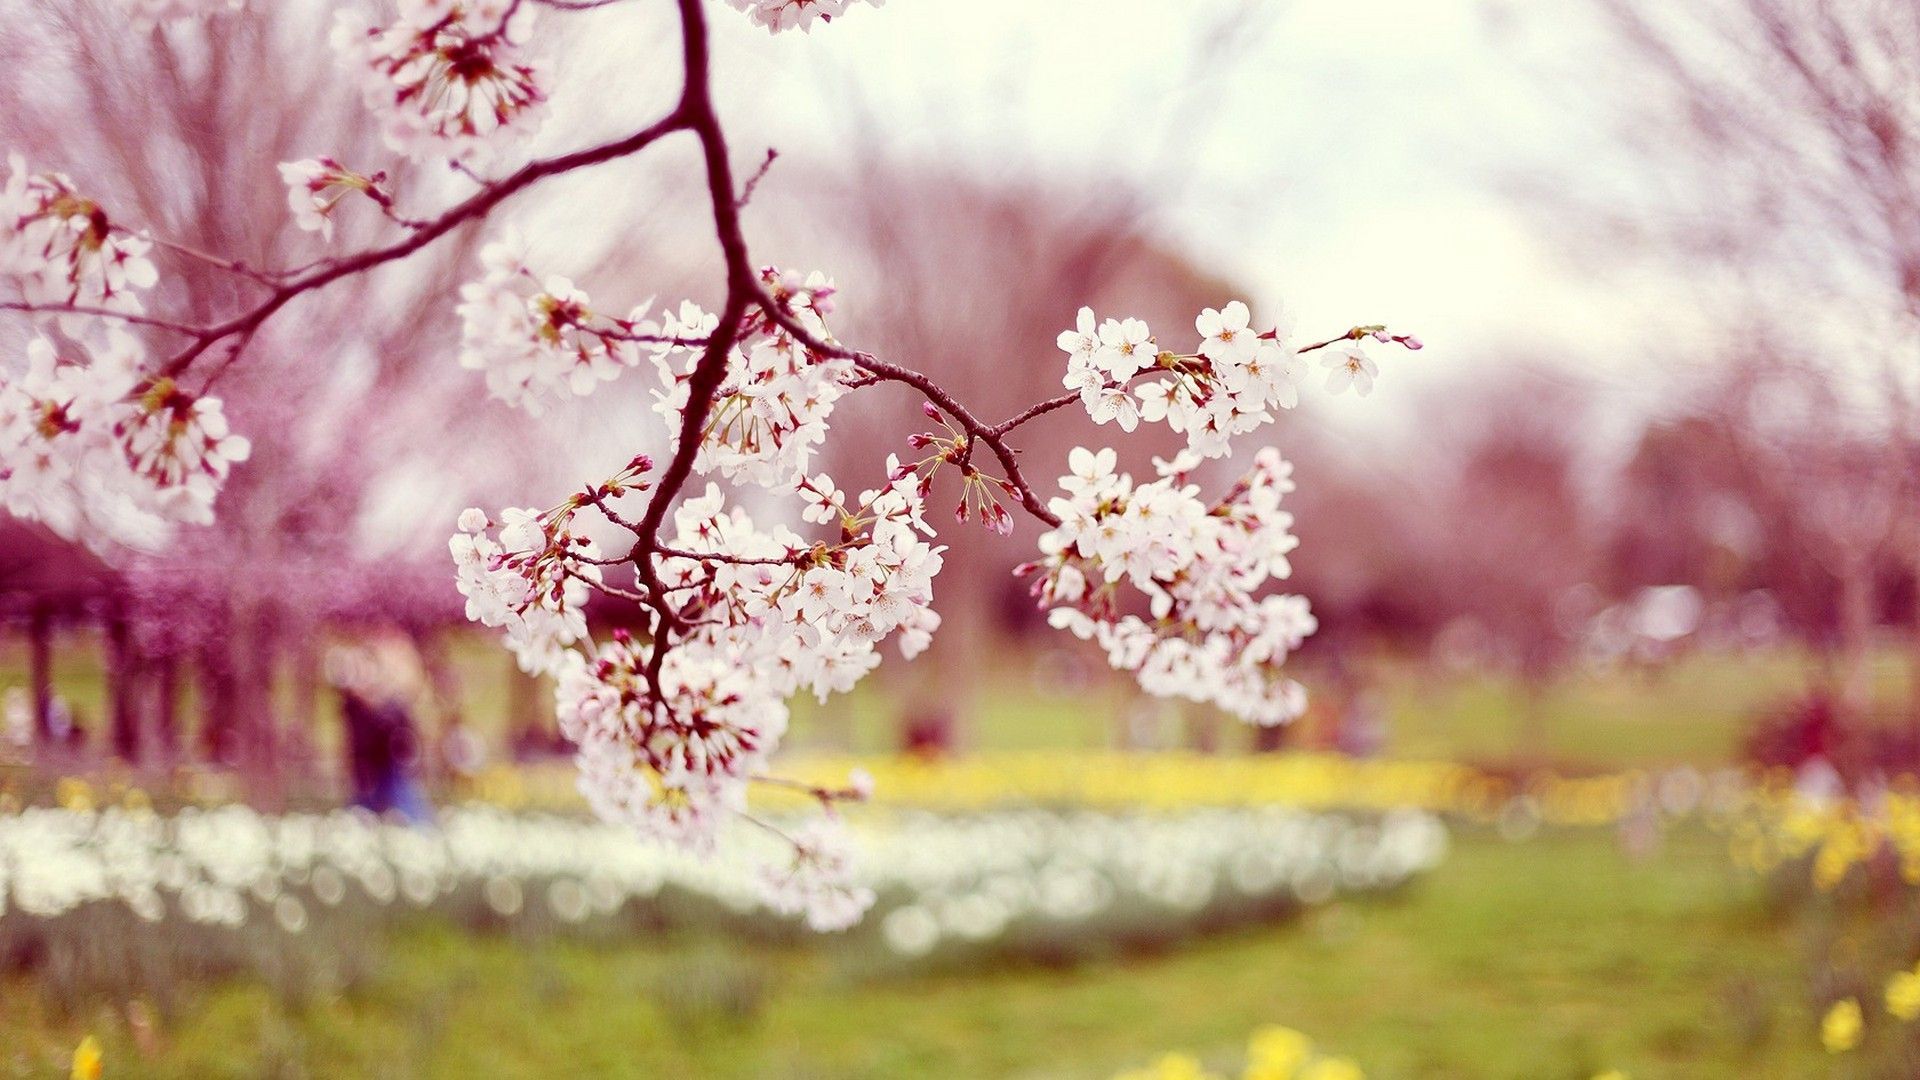 Desktop Wallpaper Beautiful Spring. Best HD Wallpaper. Spring wallpaper, Spring wallpaper hd, Picture of spring flowers